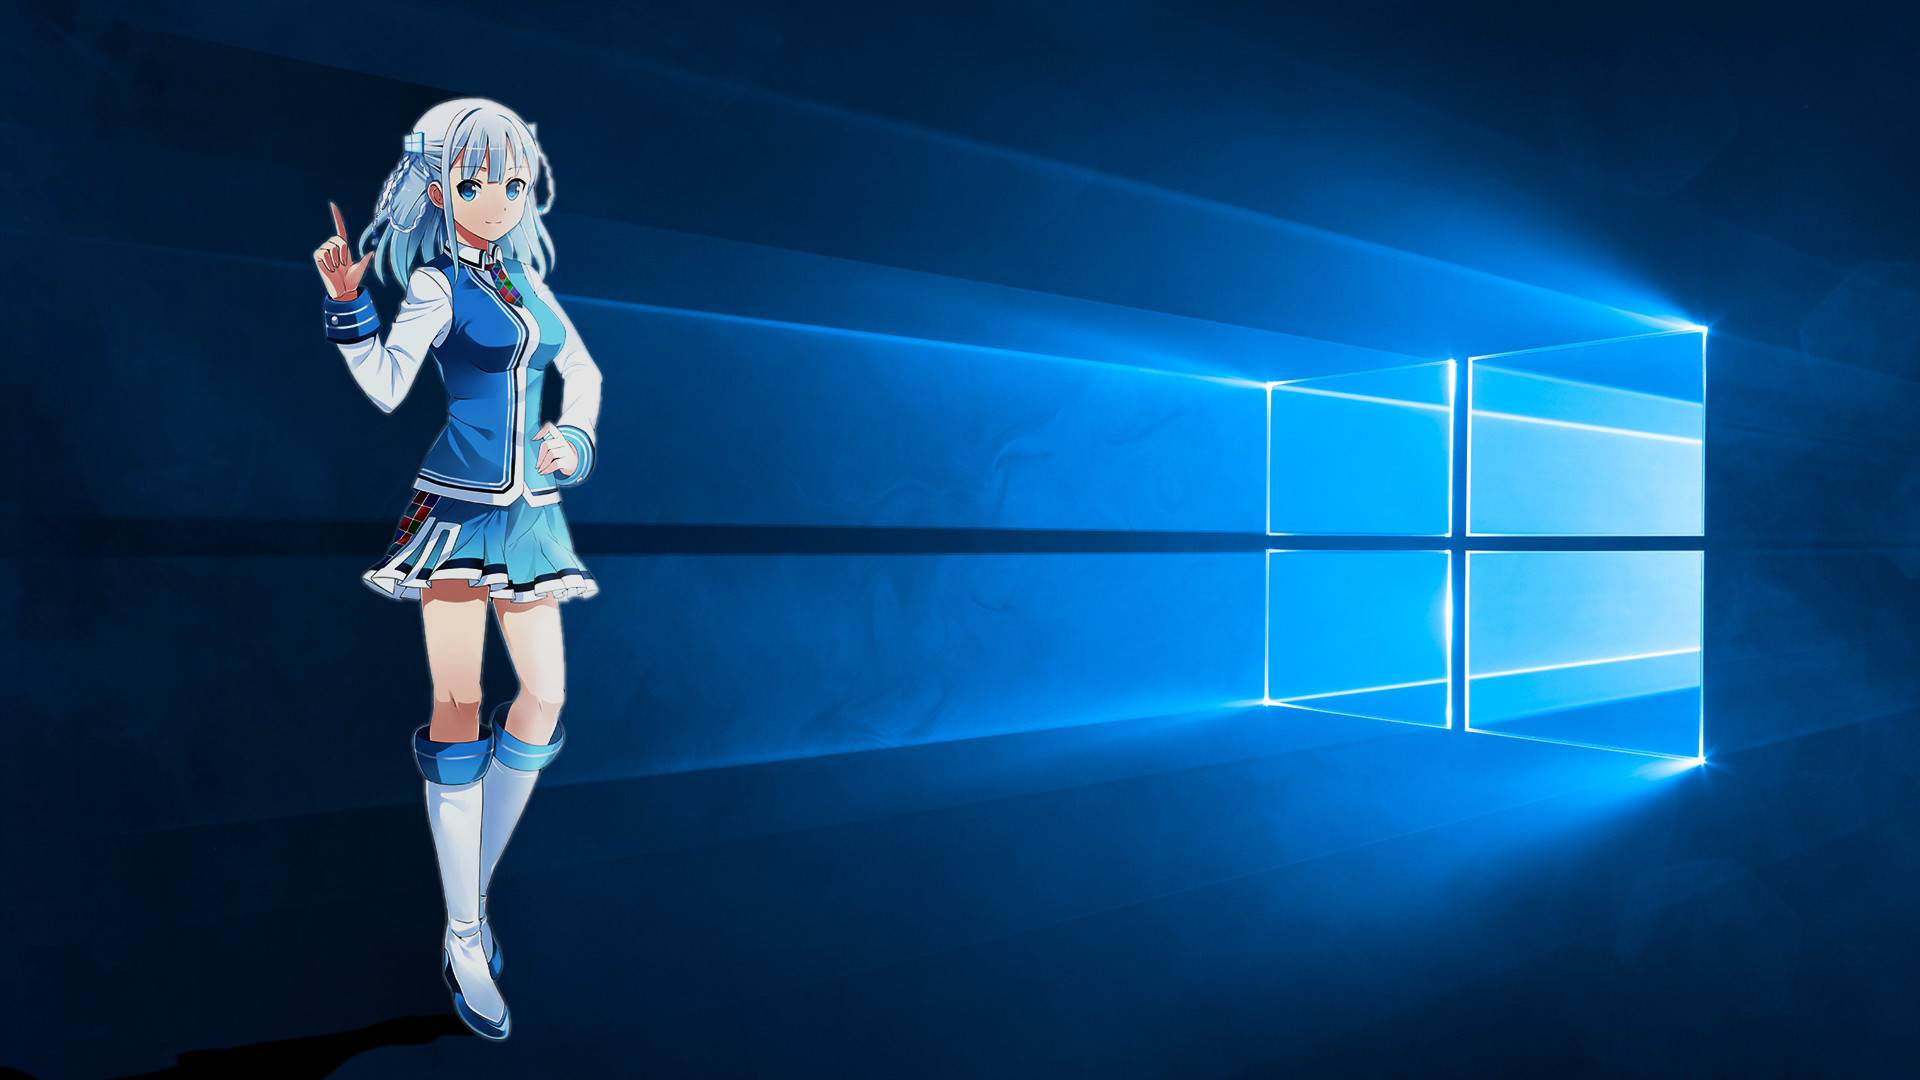 Заставка windows 10 аниме · бесплатное фото